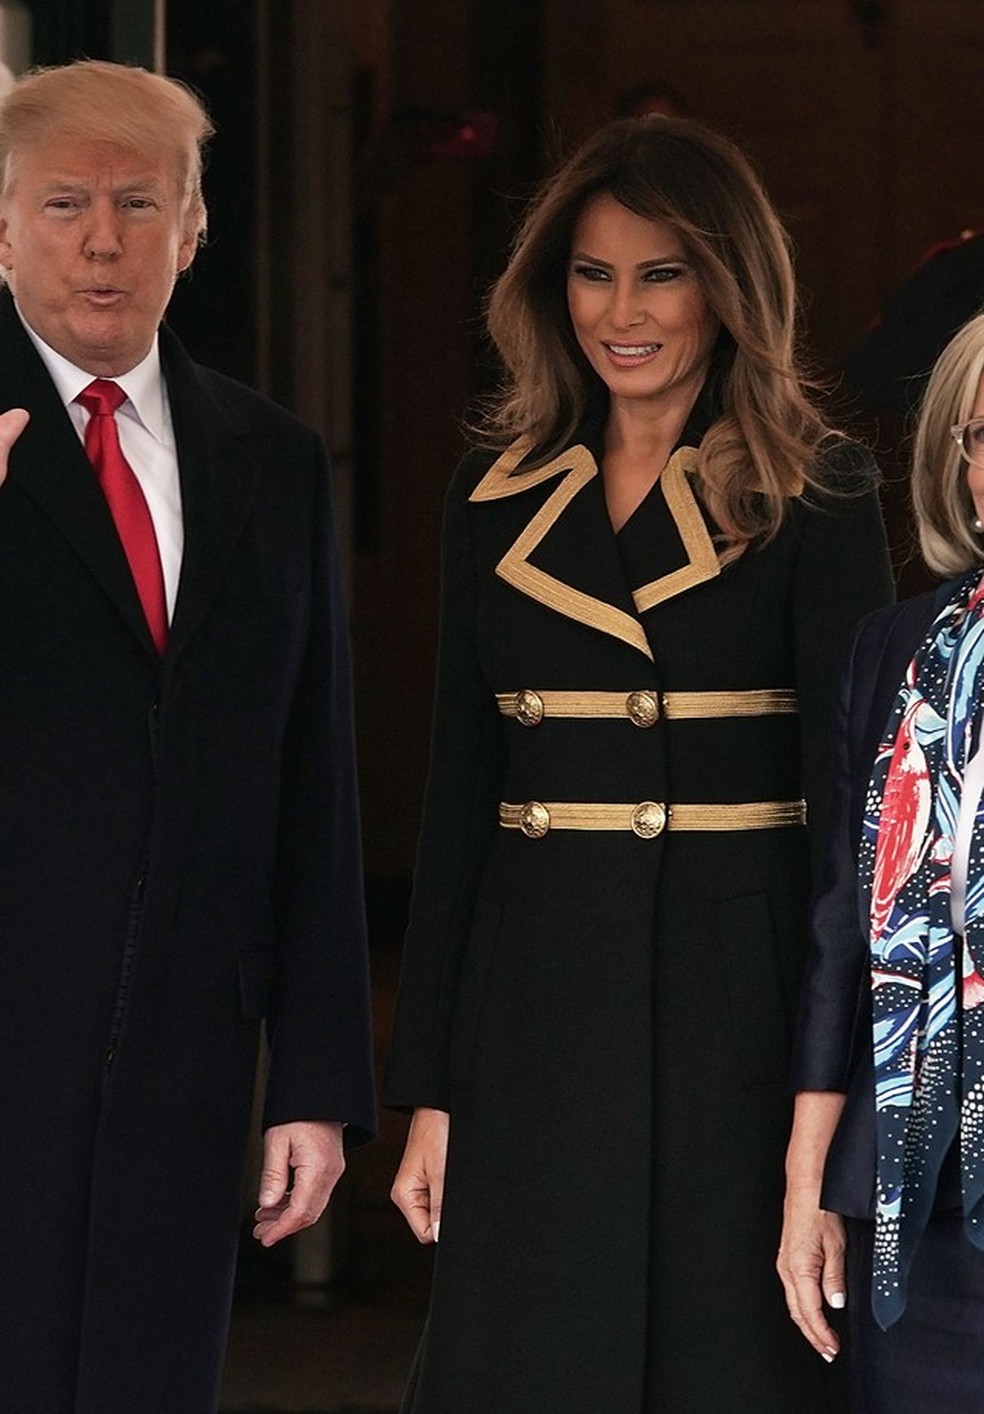 Ao lado do marido, Melania Trump recebe o primeiro-ministro da Austrália e sua esposa (Foto: Getty Images) — Foto: Vogue